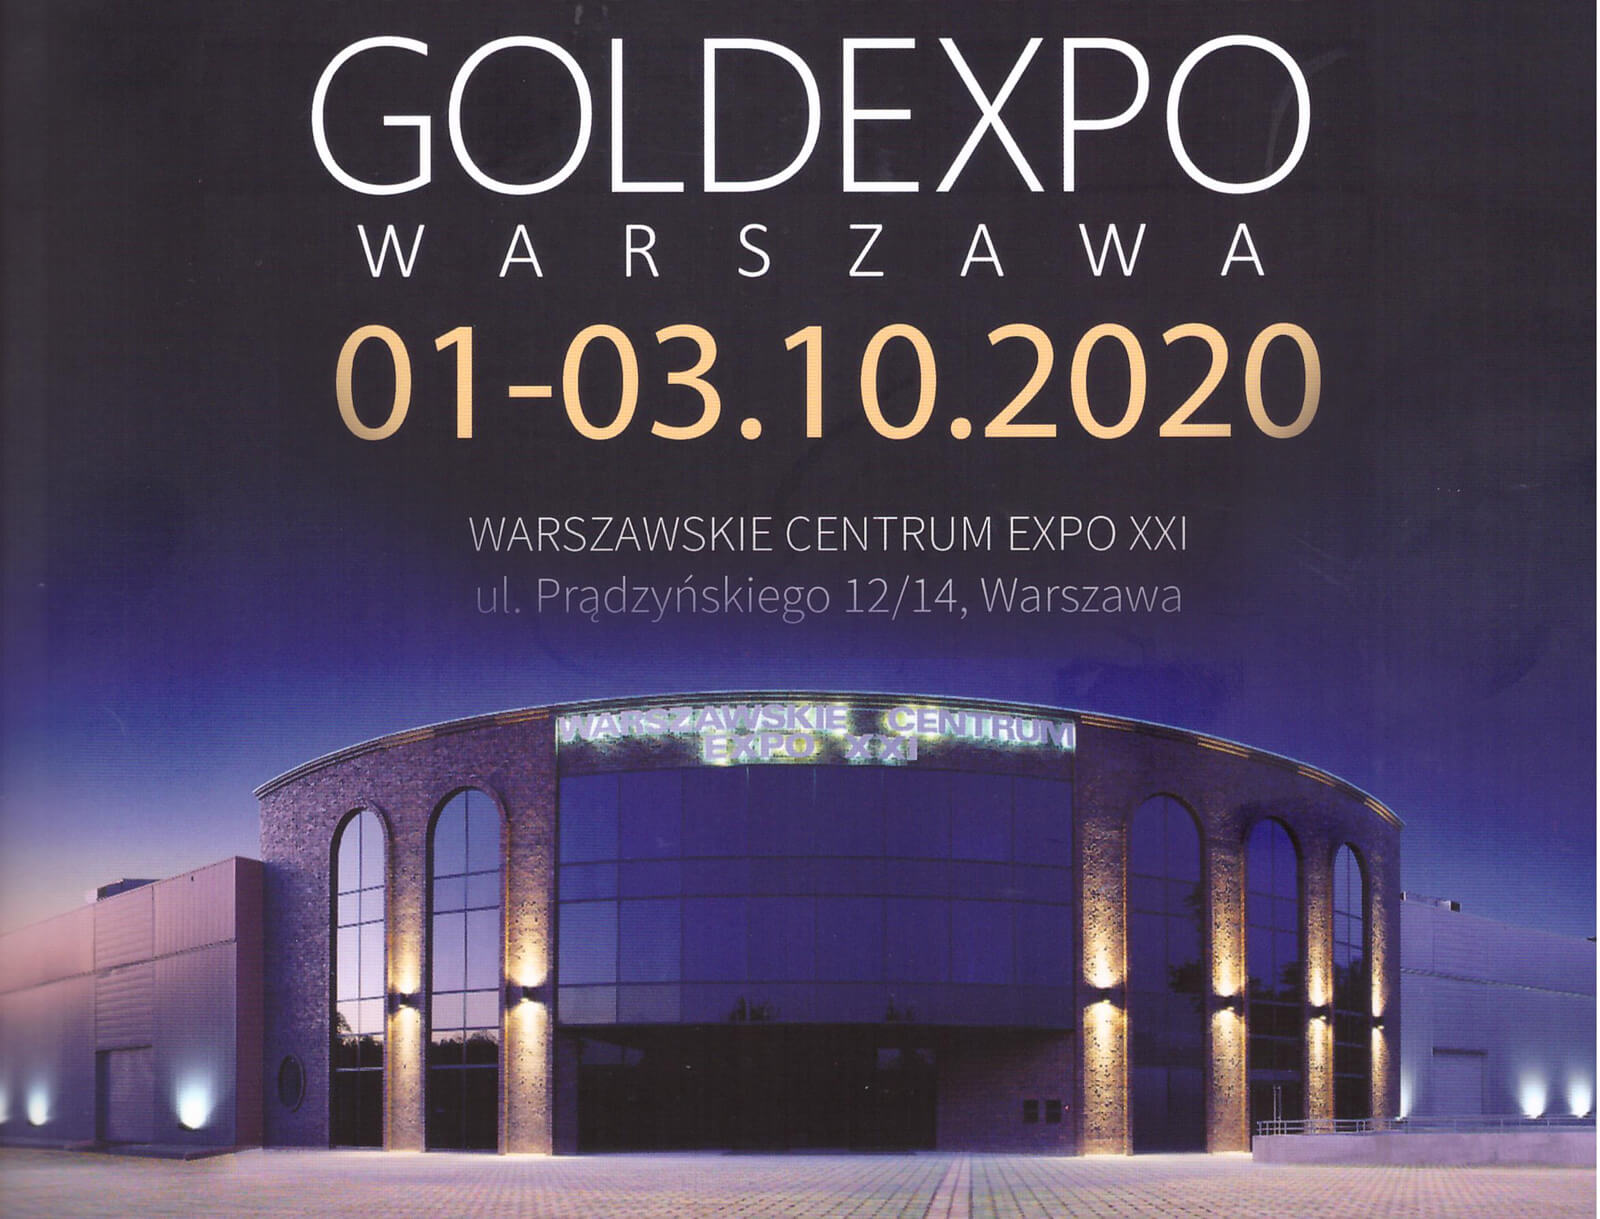 Targi GOLDEXPO 2020 z reprezentacją zegarków